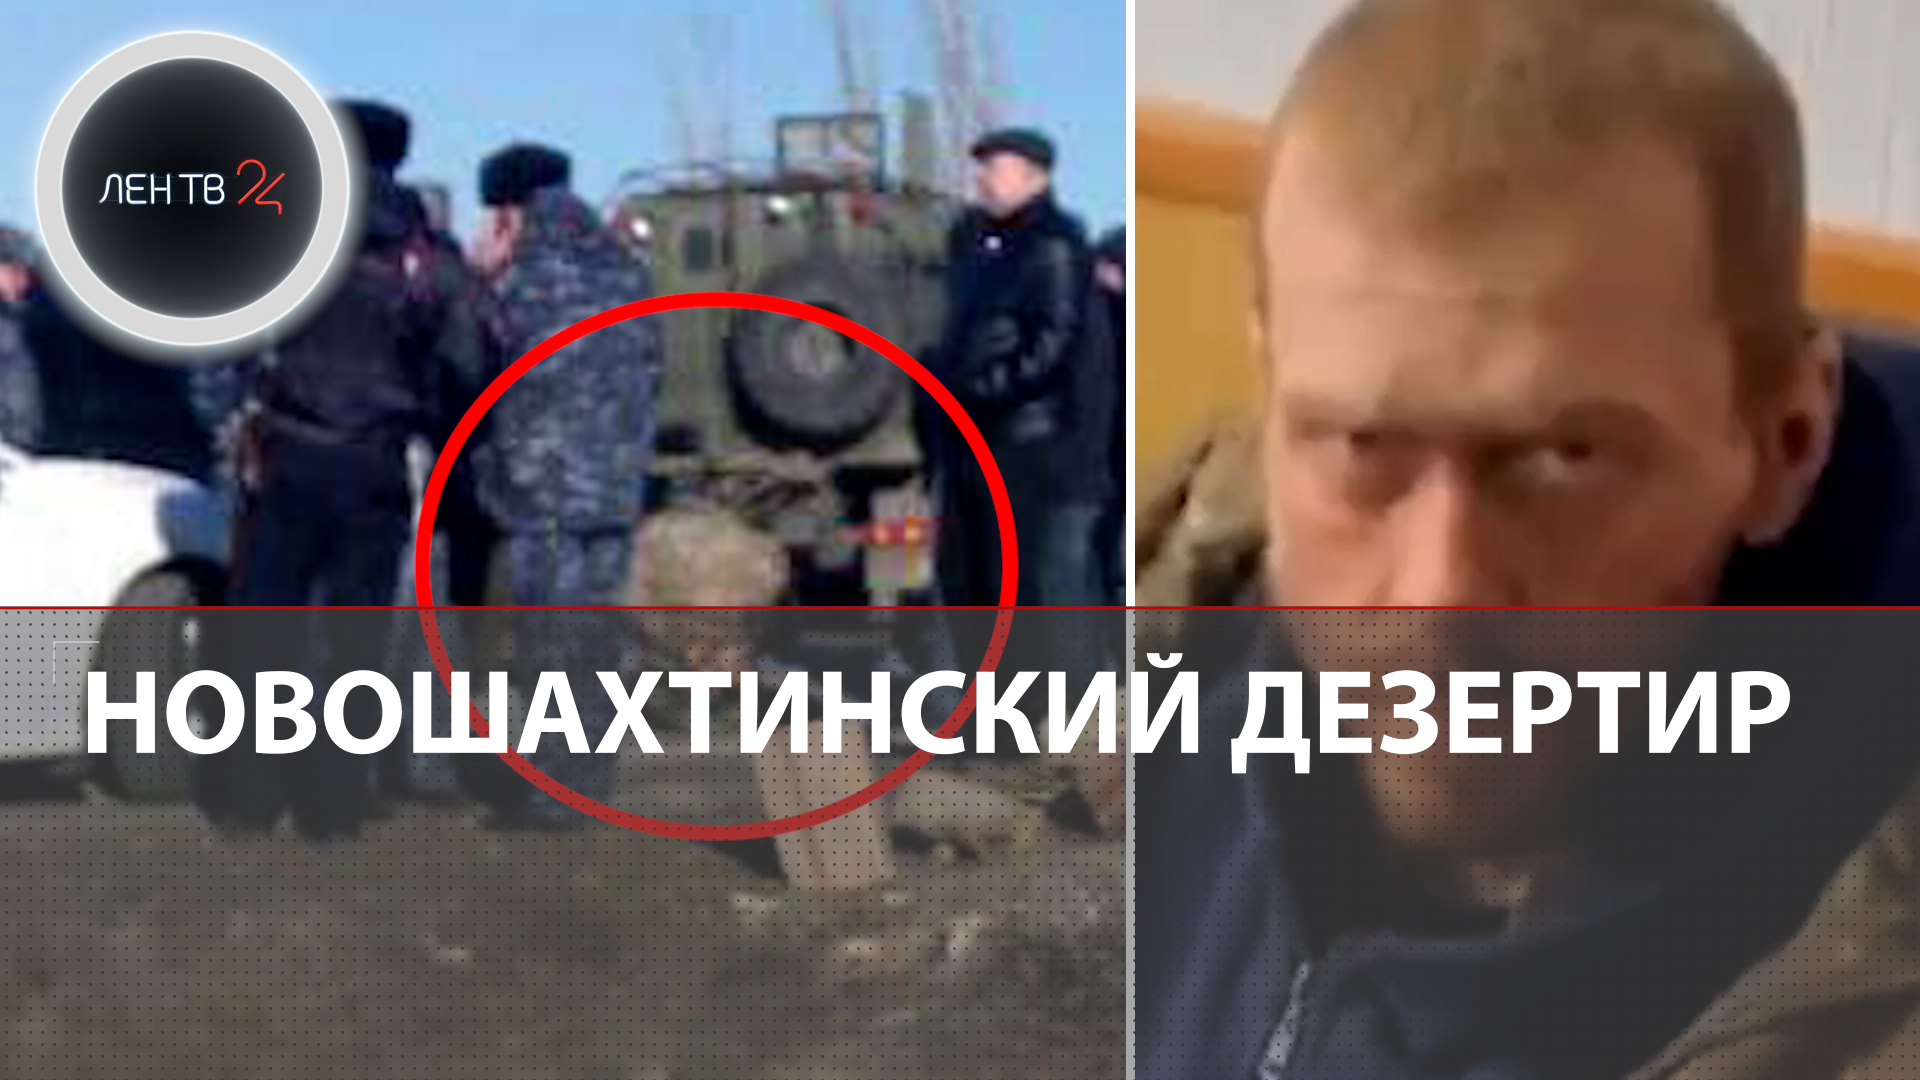 Новошахтинский дезертир задержан | Пригожин объявил о начале расследования в ЧВК "Вагнер"